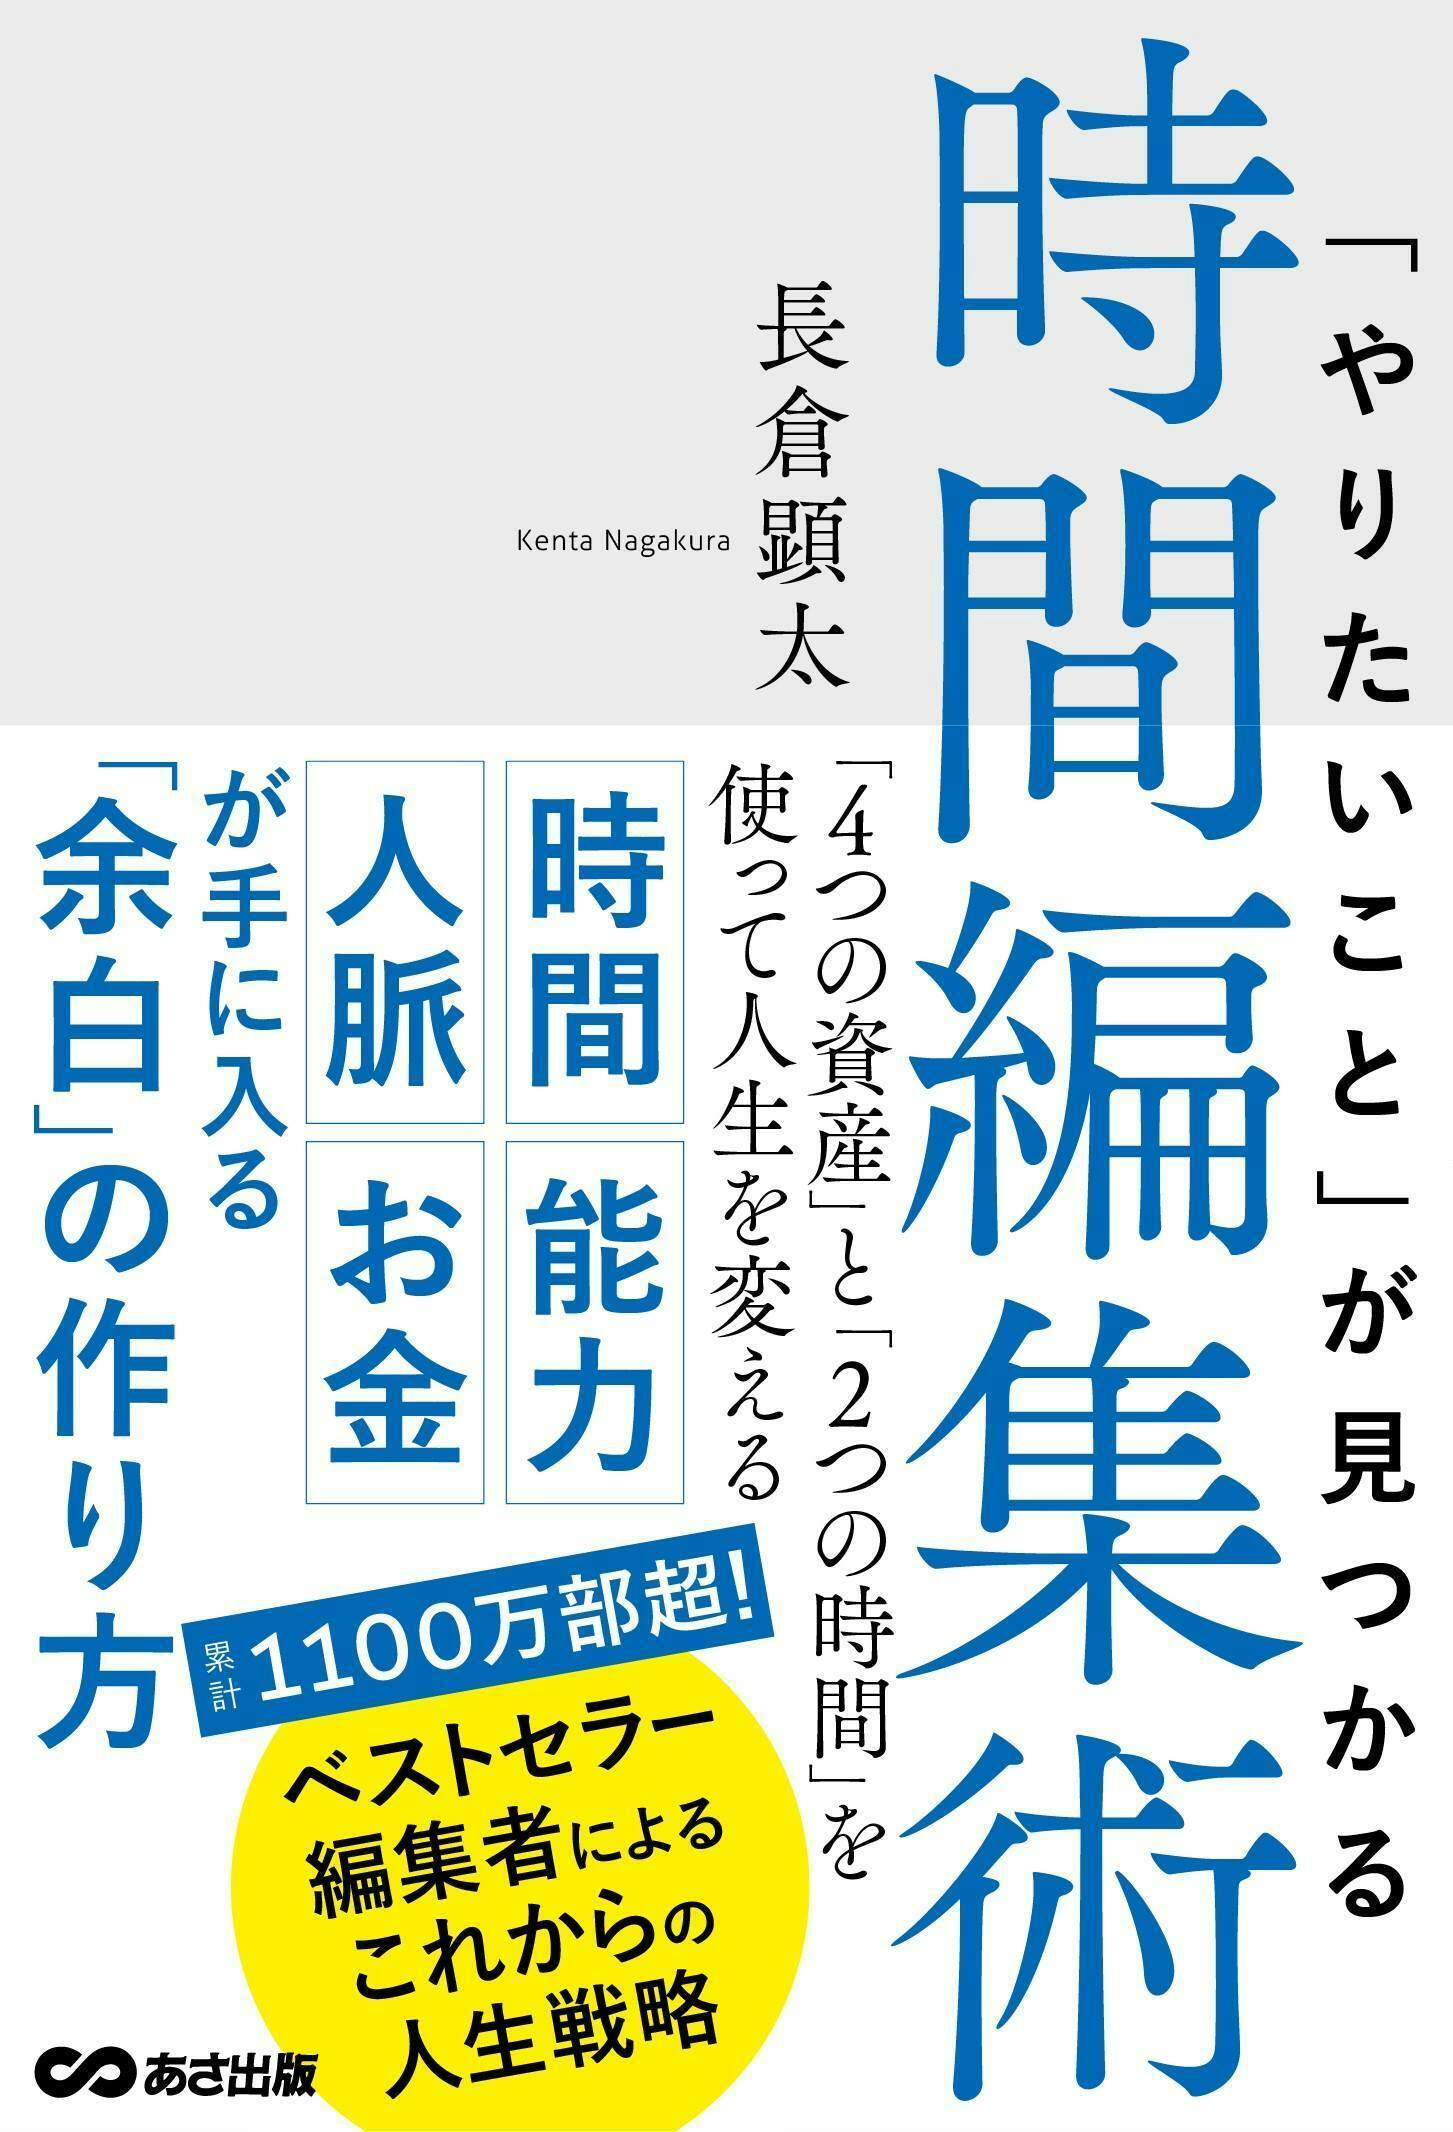 書籍『スタンフォードが中高生に教えていること』を広めて「日本の教育」を変えたい！　CAMPFIRE　(キャンプファイヤー)